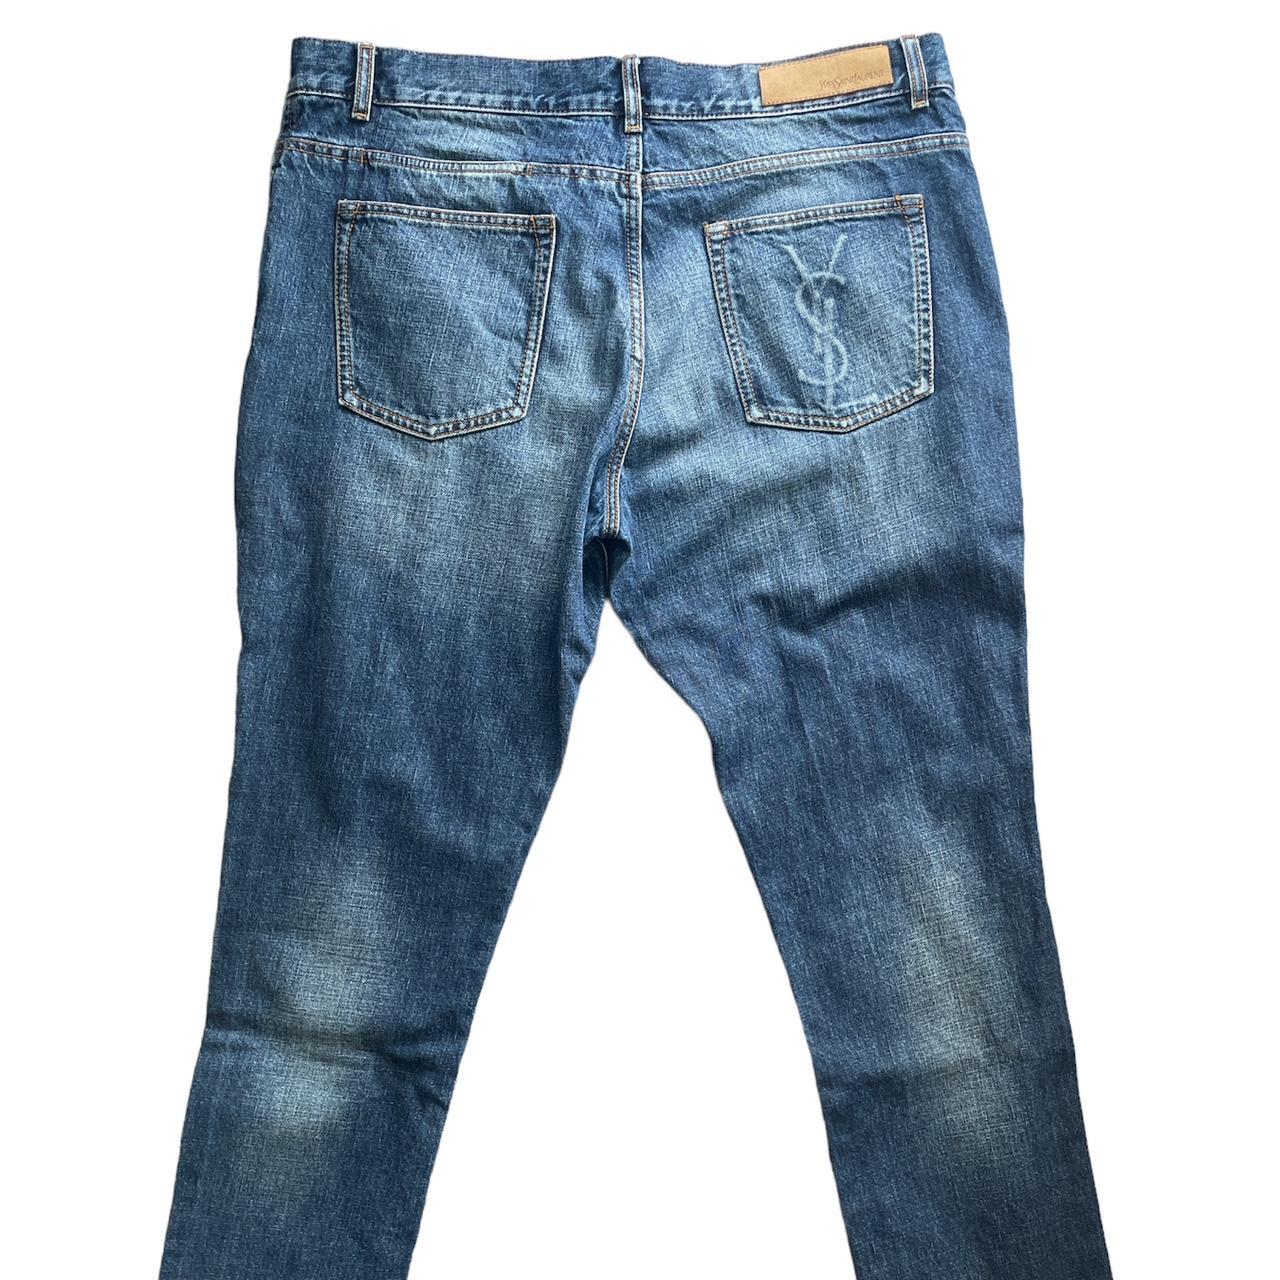 Rare YSL blue denim jeans (Authentic) Size 52 The... - Depop